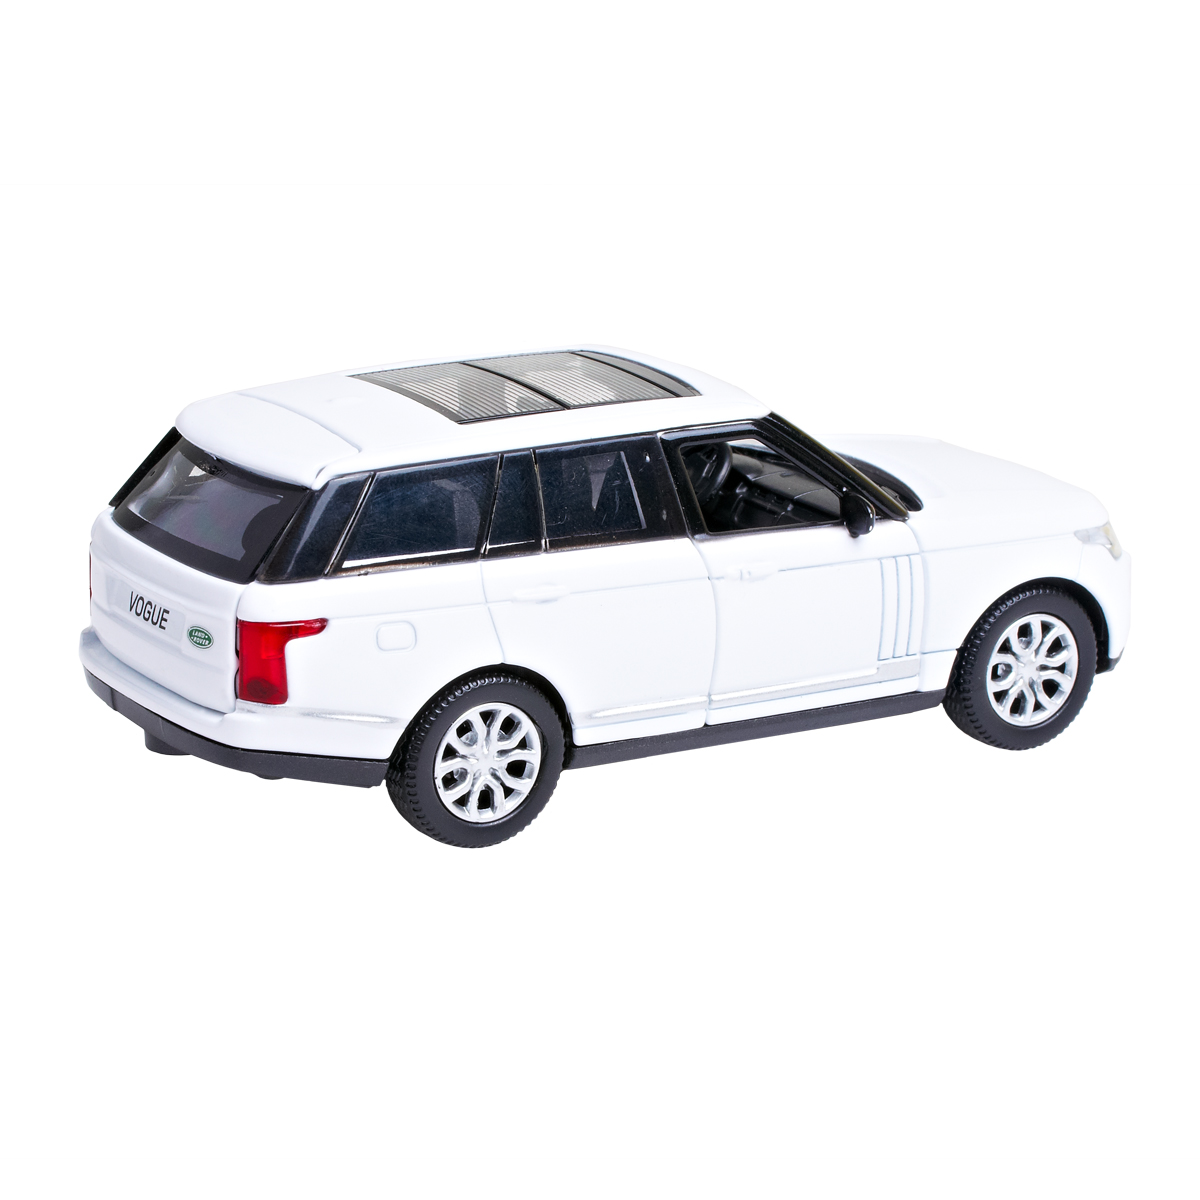 Автомодель Technopark Range Rover Vogue, 1:32, білий (VOGUE-WT) - фото 5